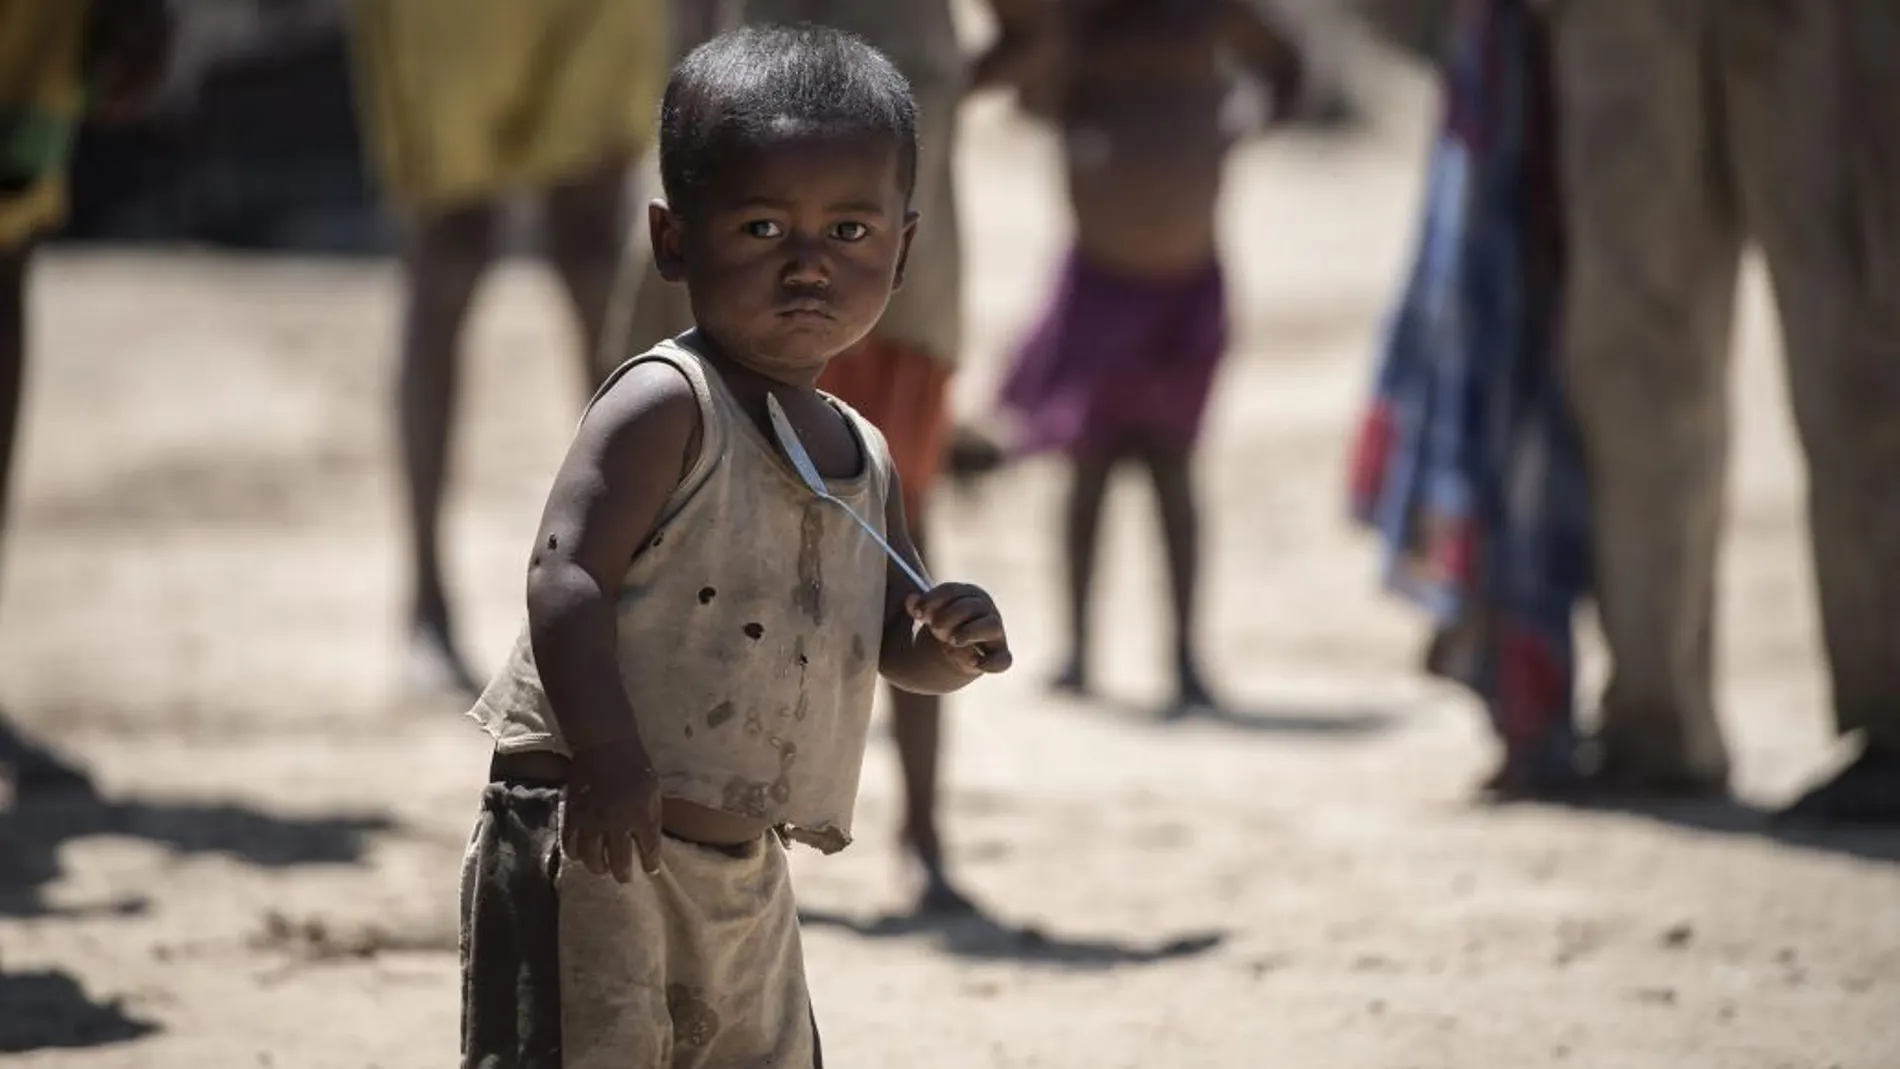 Un niño, que sufre de desnutrición, sostiene una cuchara en la ciudad de Amboasary, Madagascar